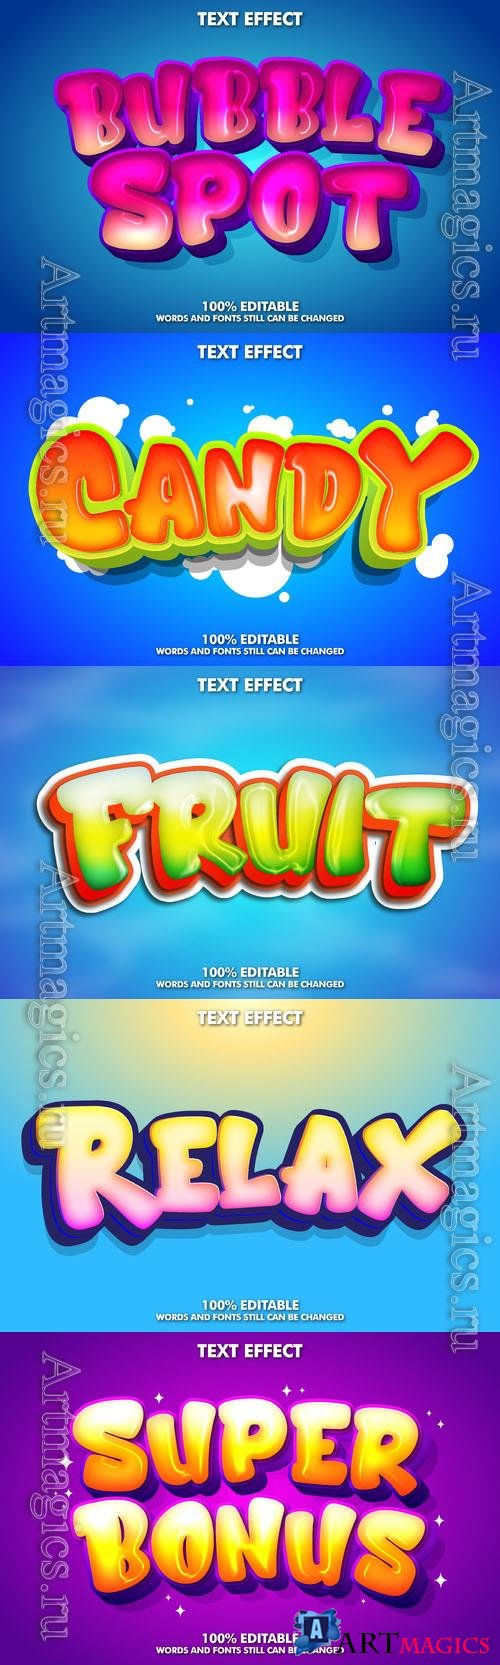 Vector 3d text editable, text effect font design
 vol 96 